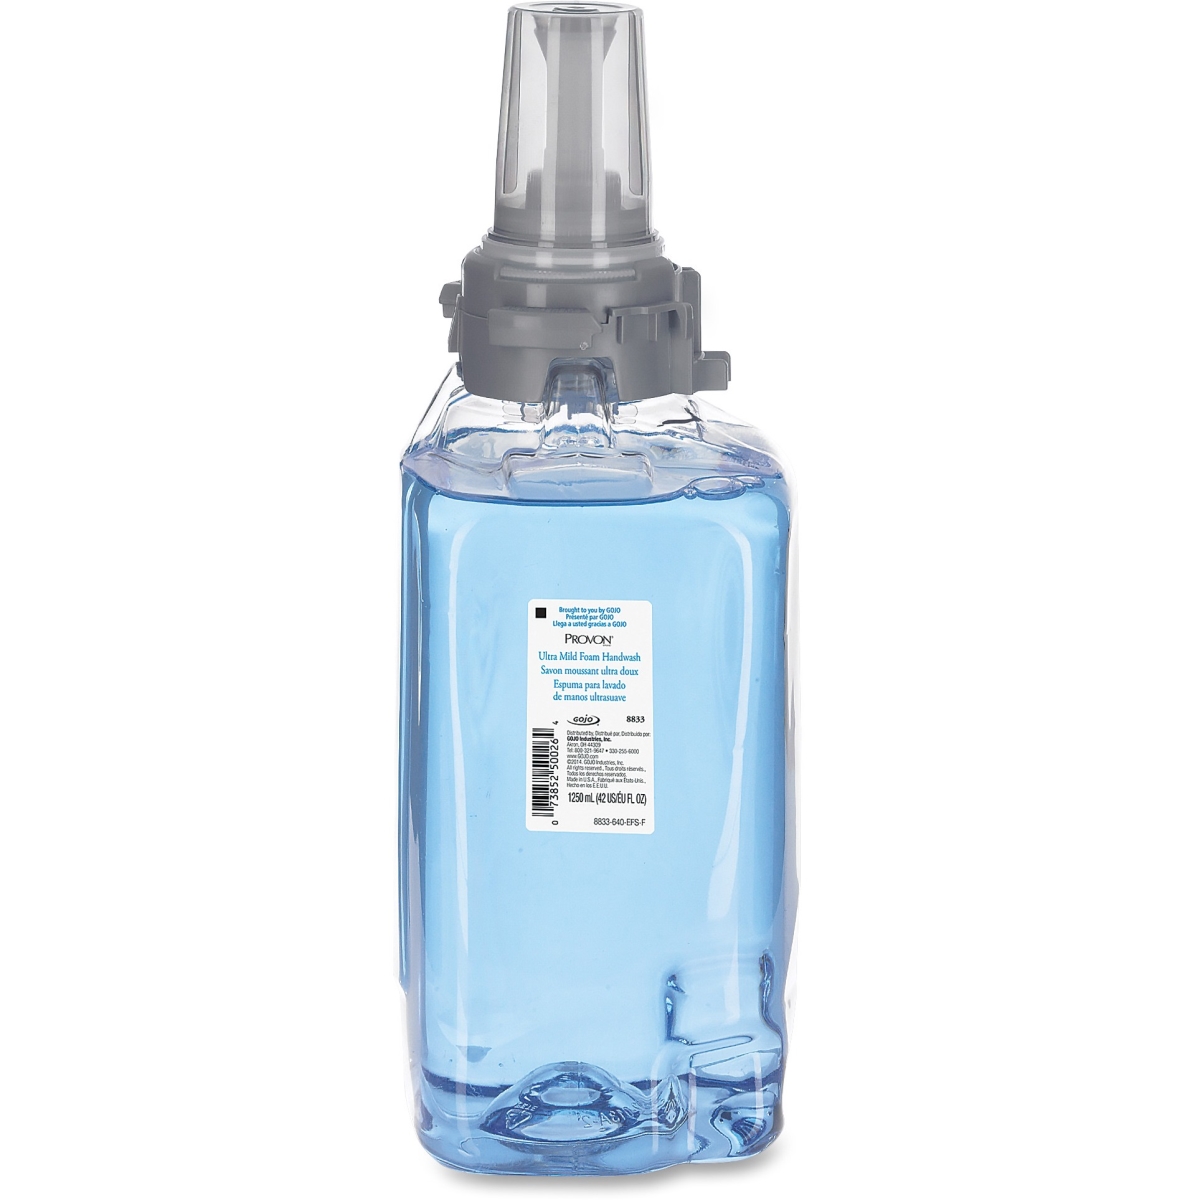 Goj883303ct 42.3 Fl Oz Ultra Mild Foam Handwash Refill - Light Blue